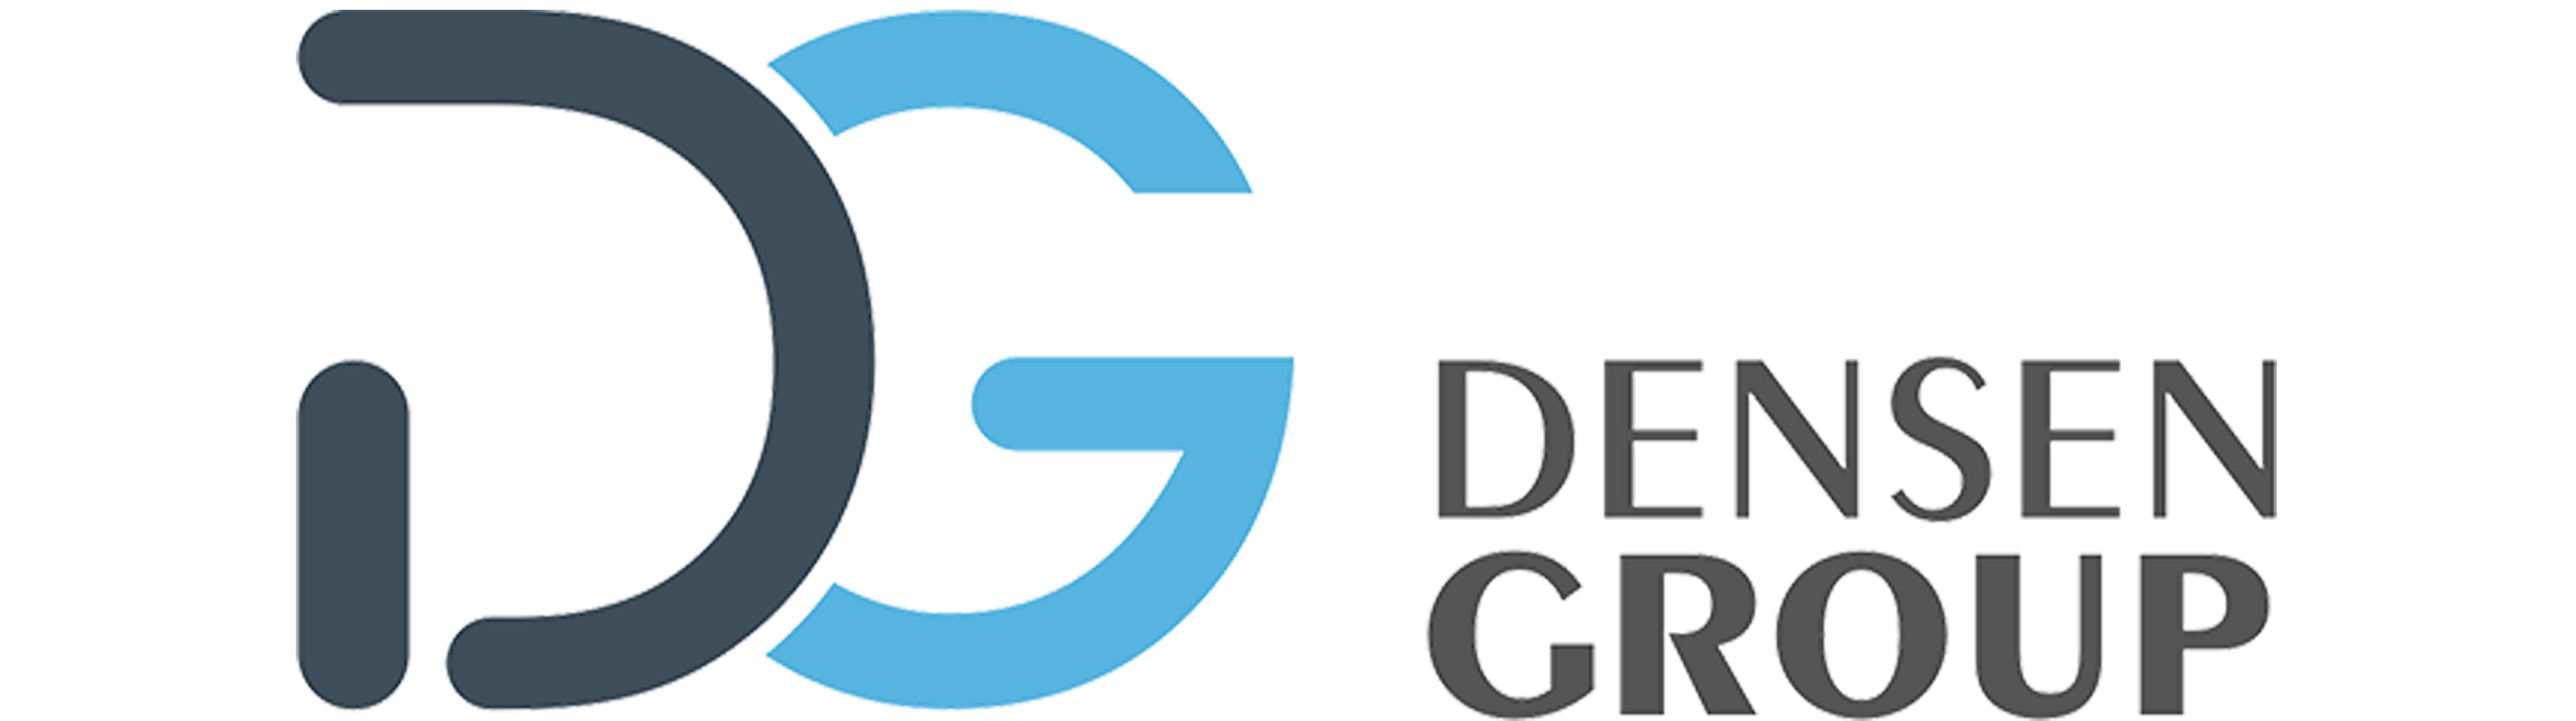 Densen Group logo-new